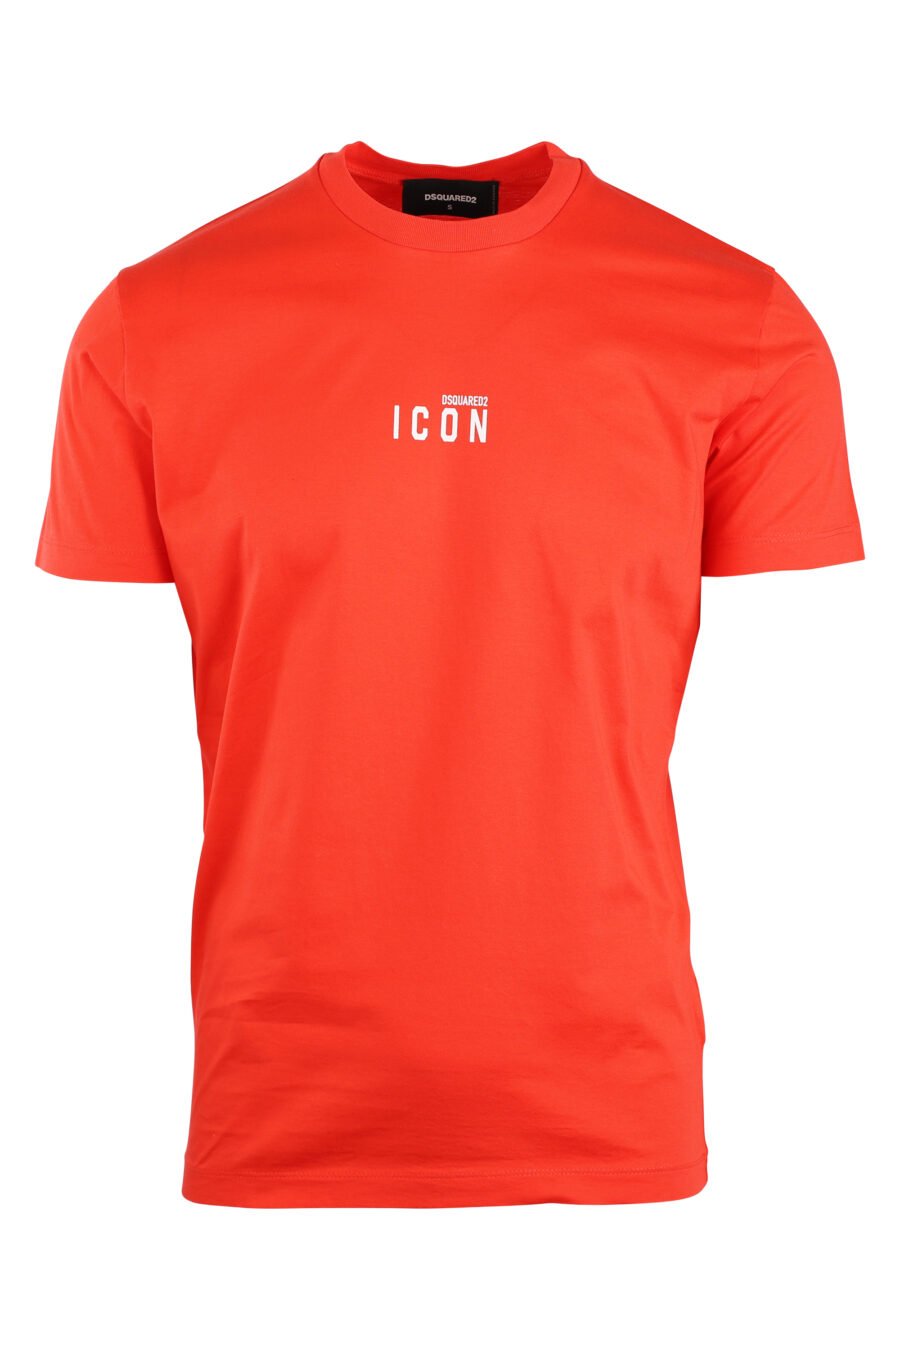 Camiseta naranja con minilogo "icon" - IMG 8926